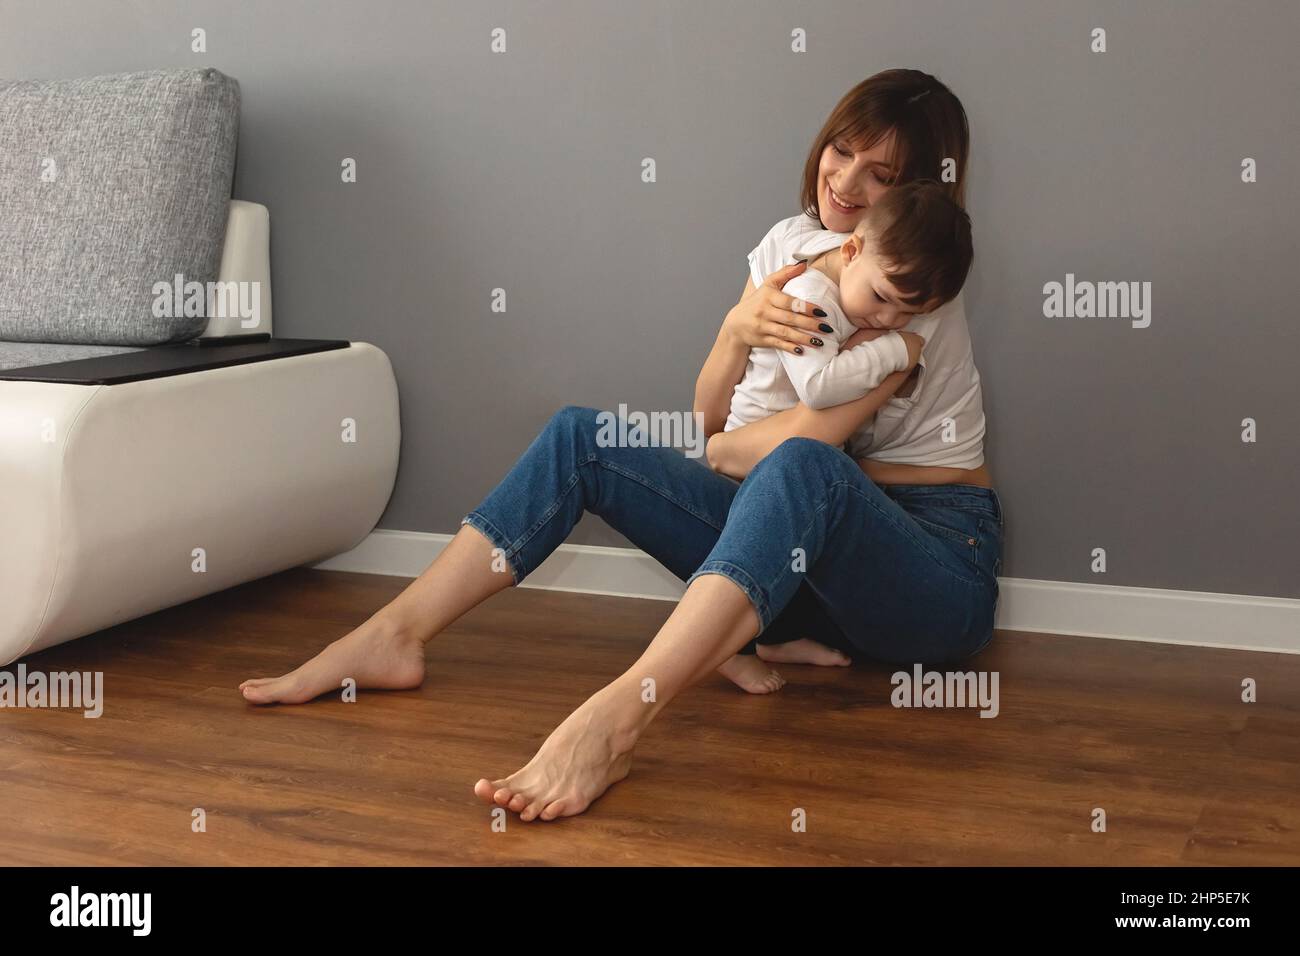 La madre y el bebé se sientan en el suelo de la habitación, abrazándose suavemente unos a otros Foto de stock